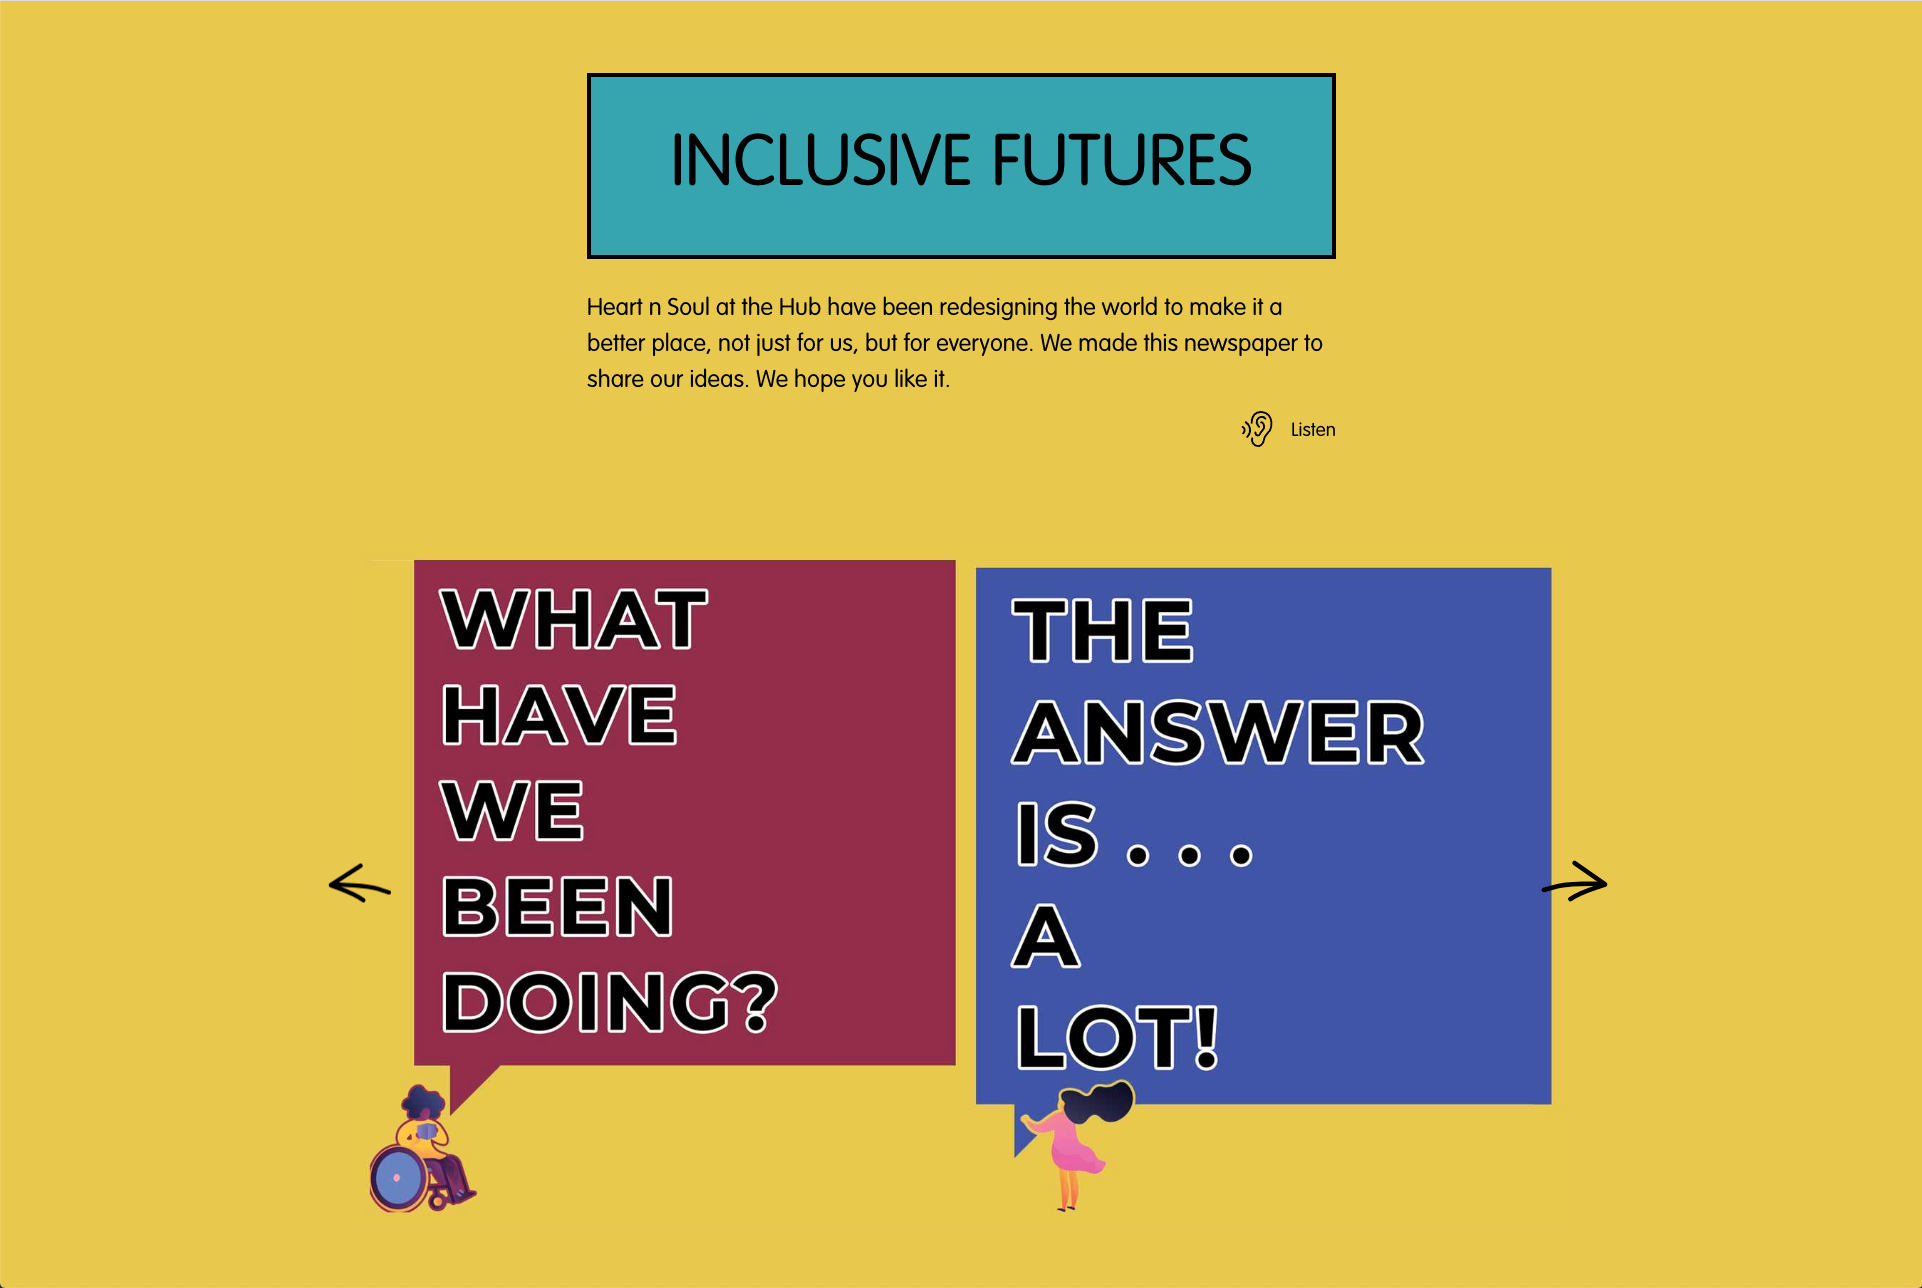 mini-site: Inclusive futures